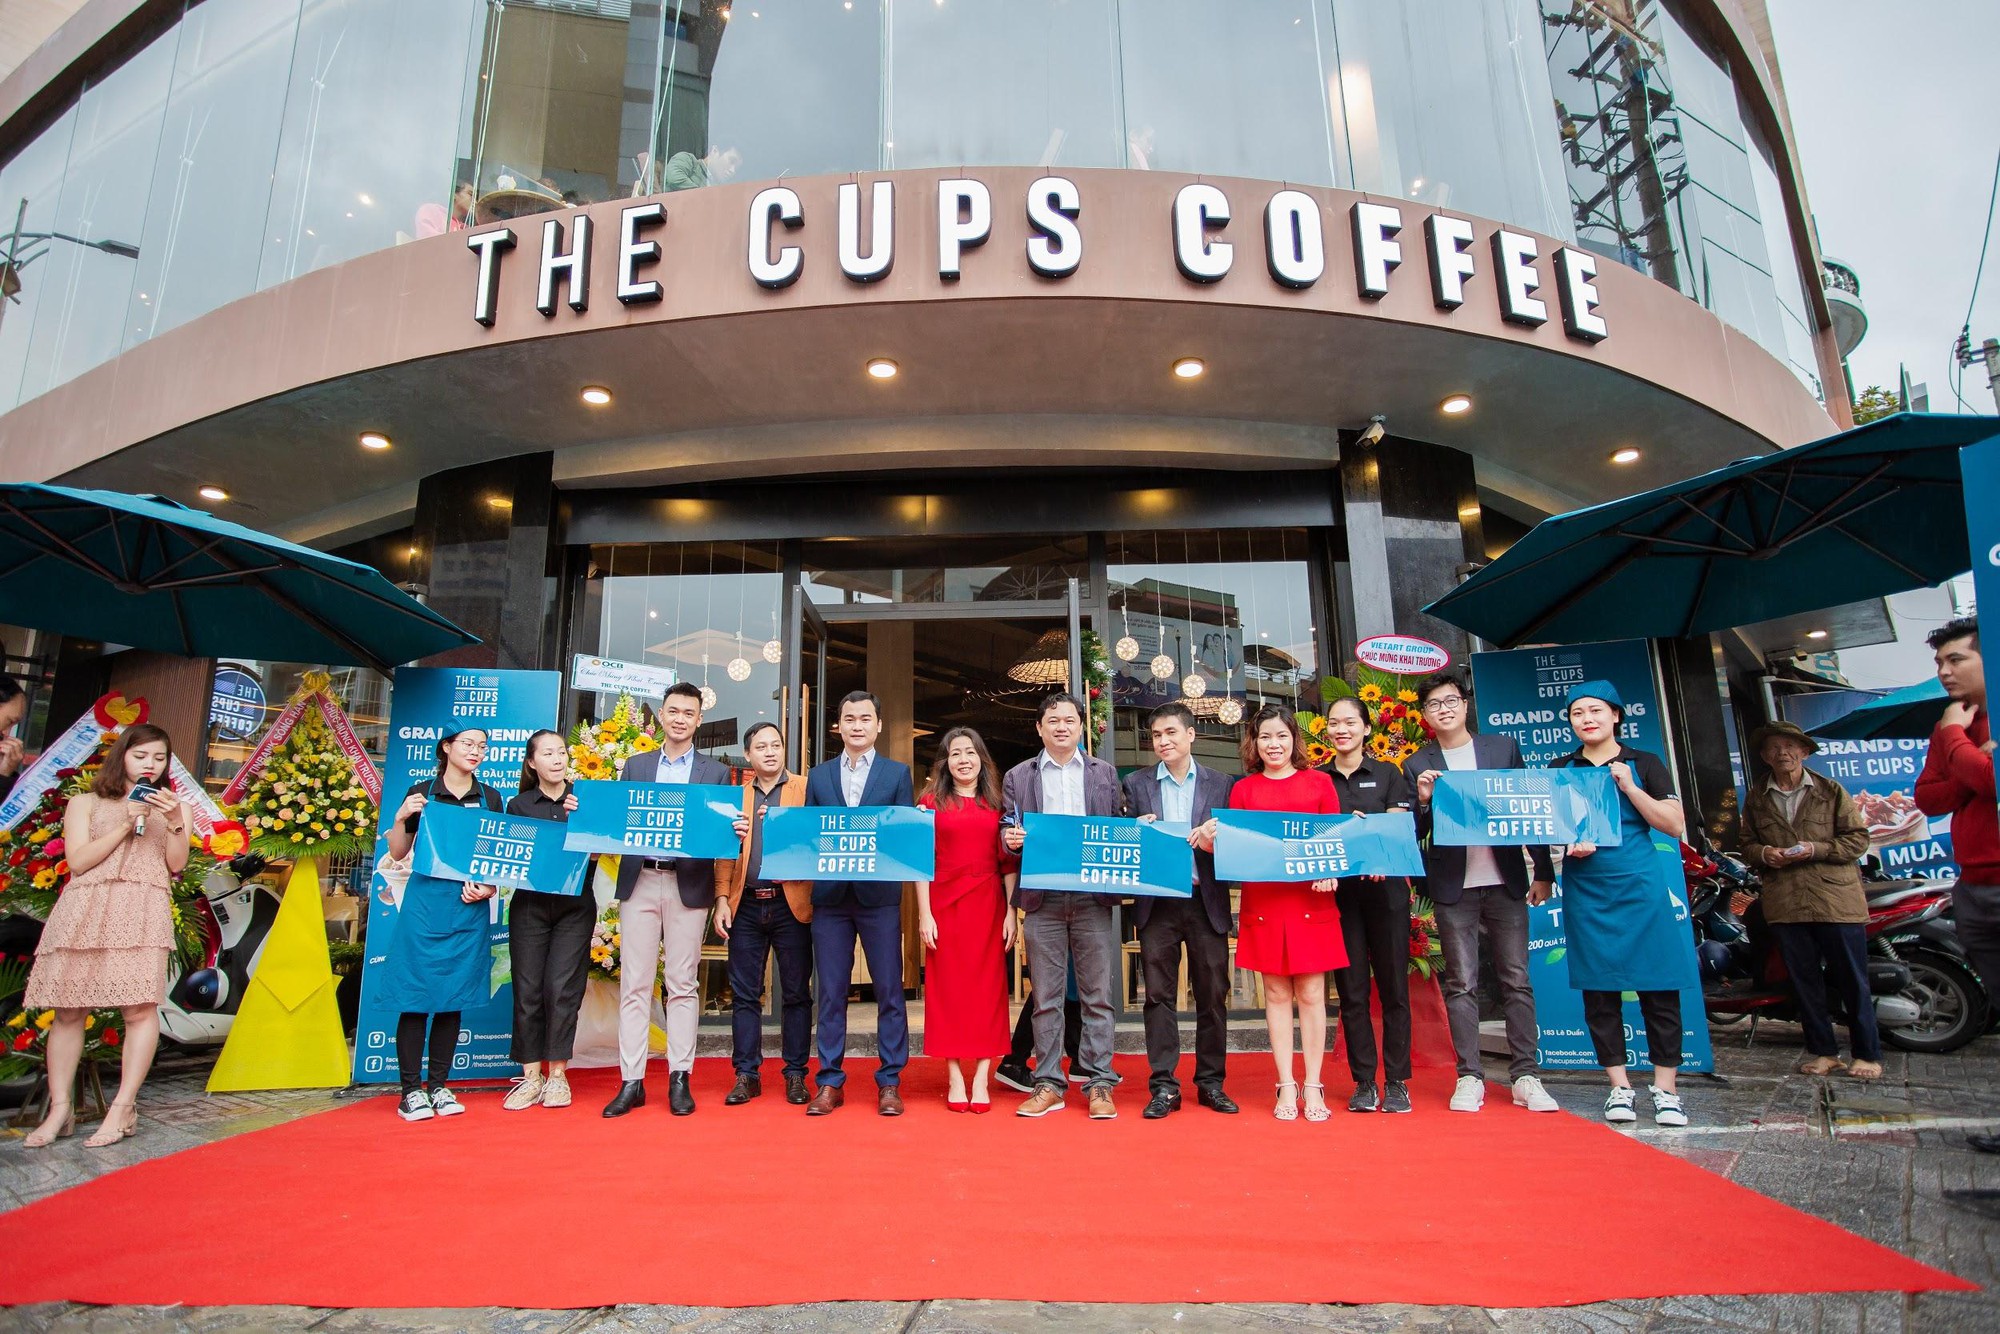 Ấn tượng màn chào sân của The Cups Coffee – Chuỗi cà phê mới tại Đà Nẵng - Ảnh 2.